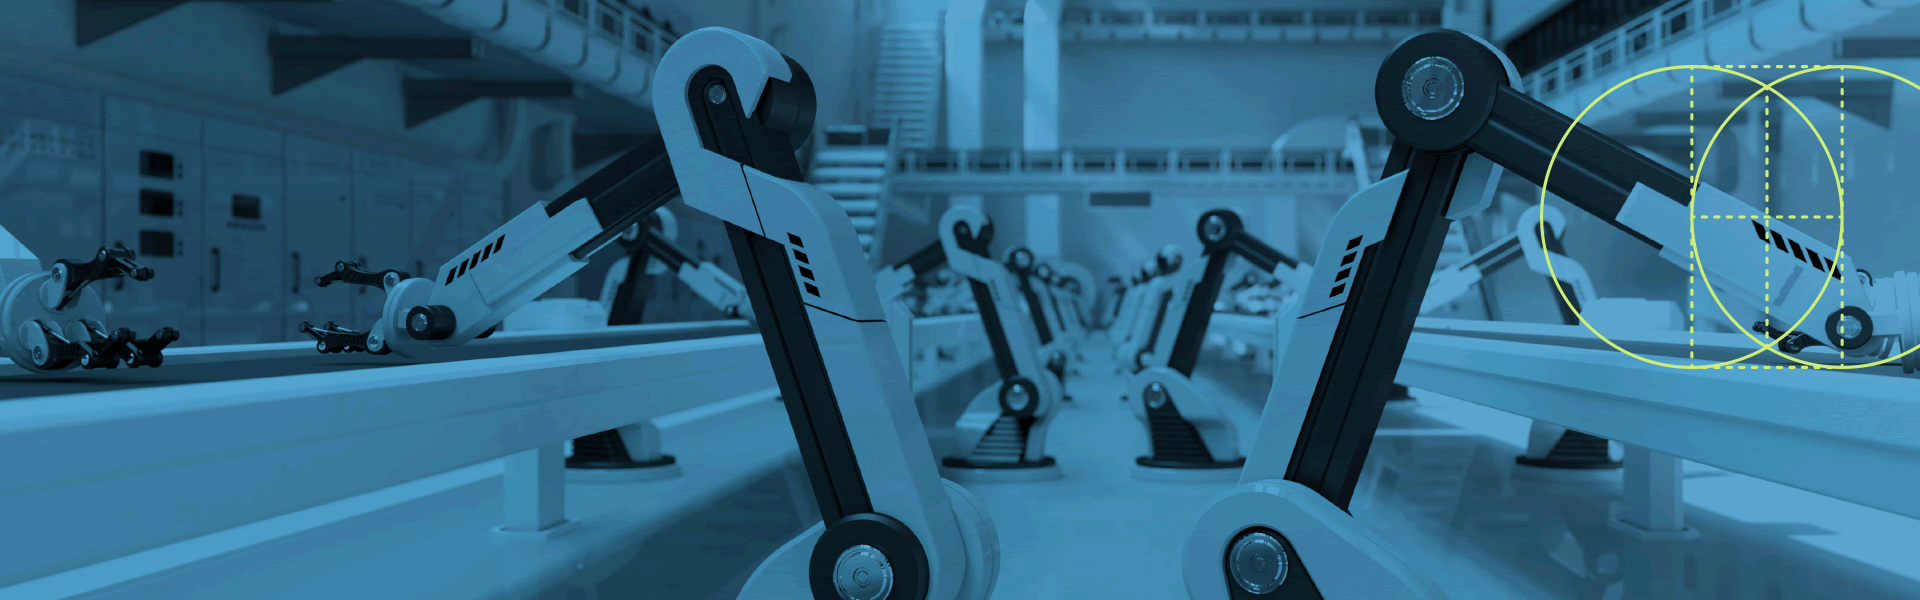 机器人在工厂